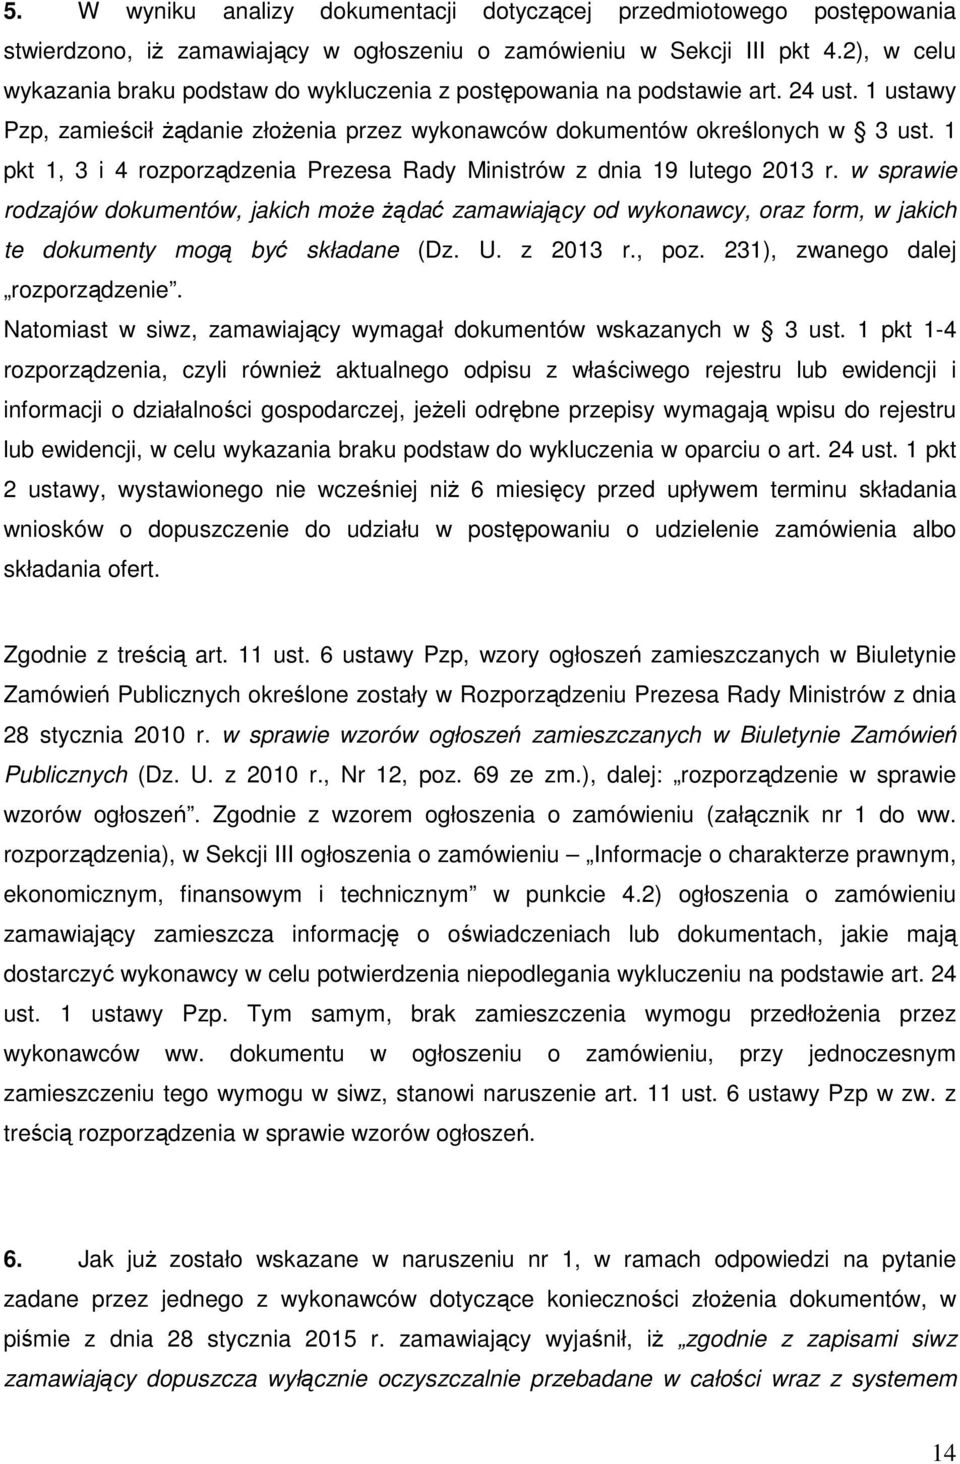 1 pkt 1, 3 i 4 rozporządzenia Prezesa Rady Ministrów z dnia 19 lutego 2013 r.